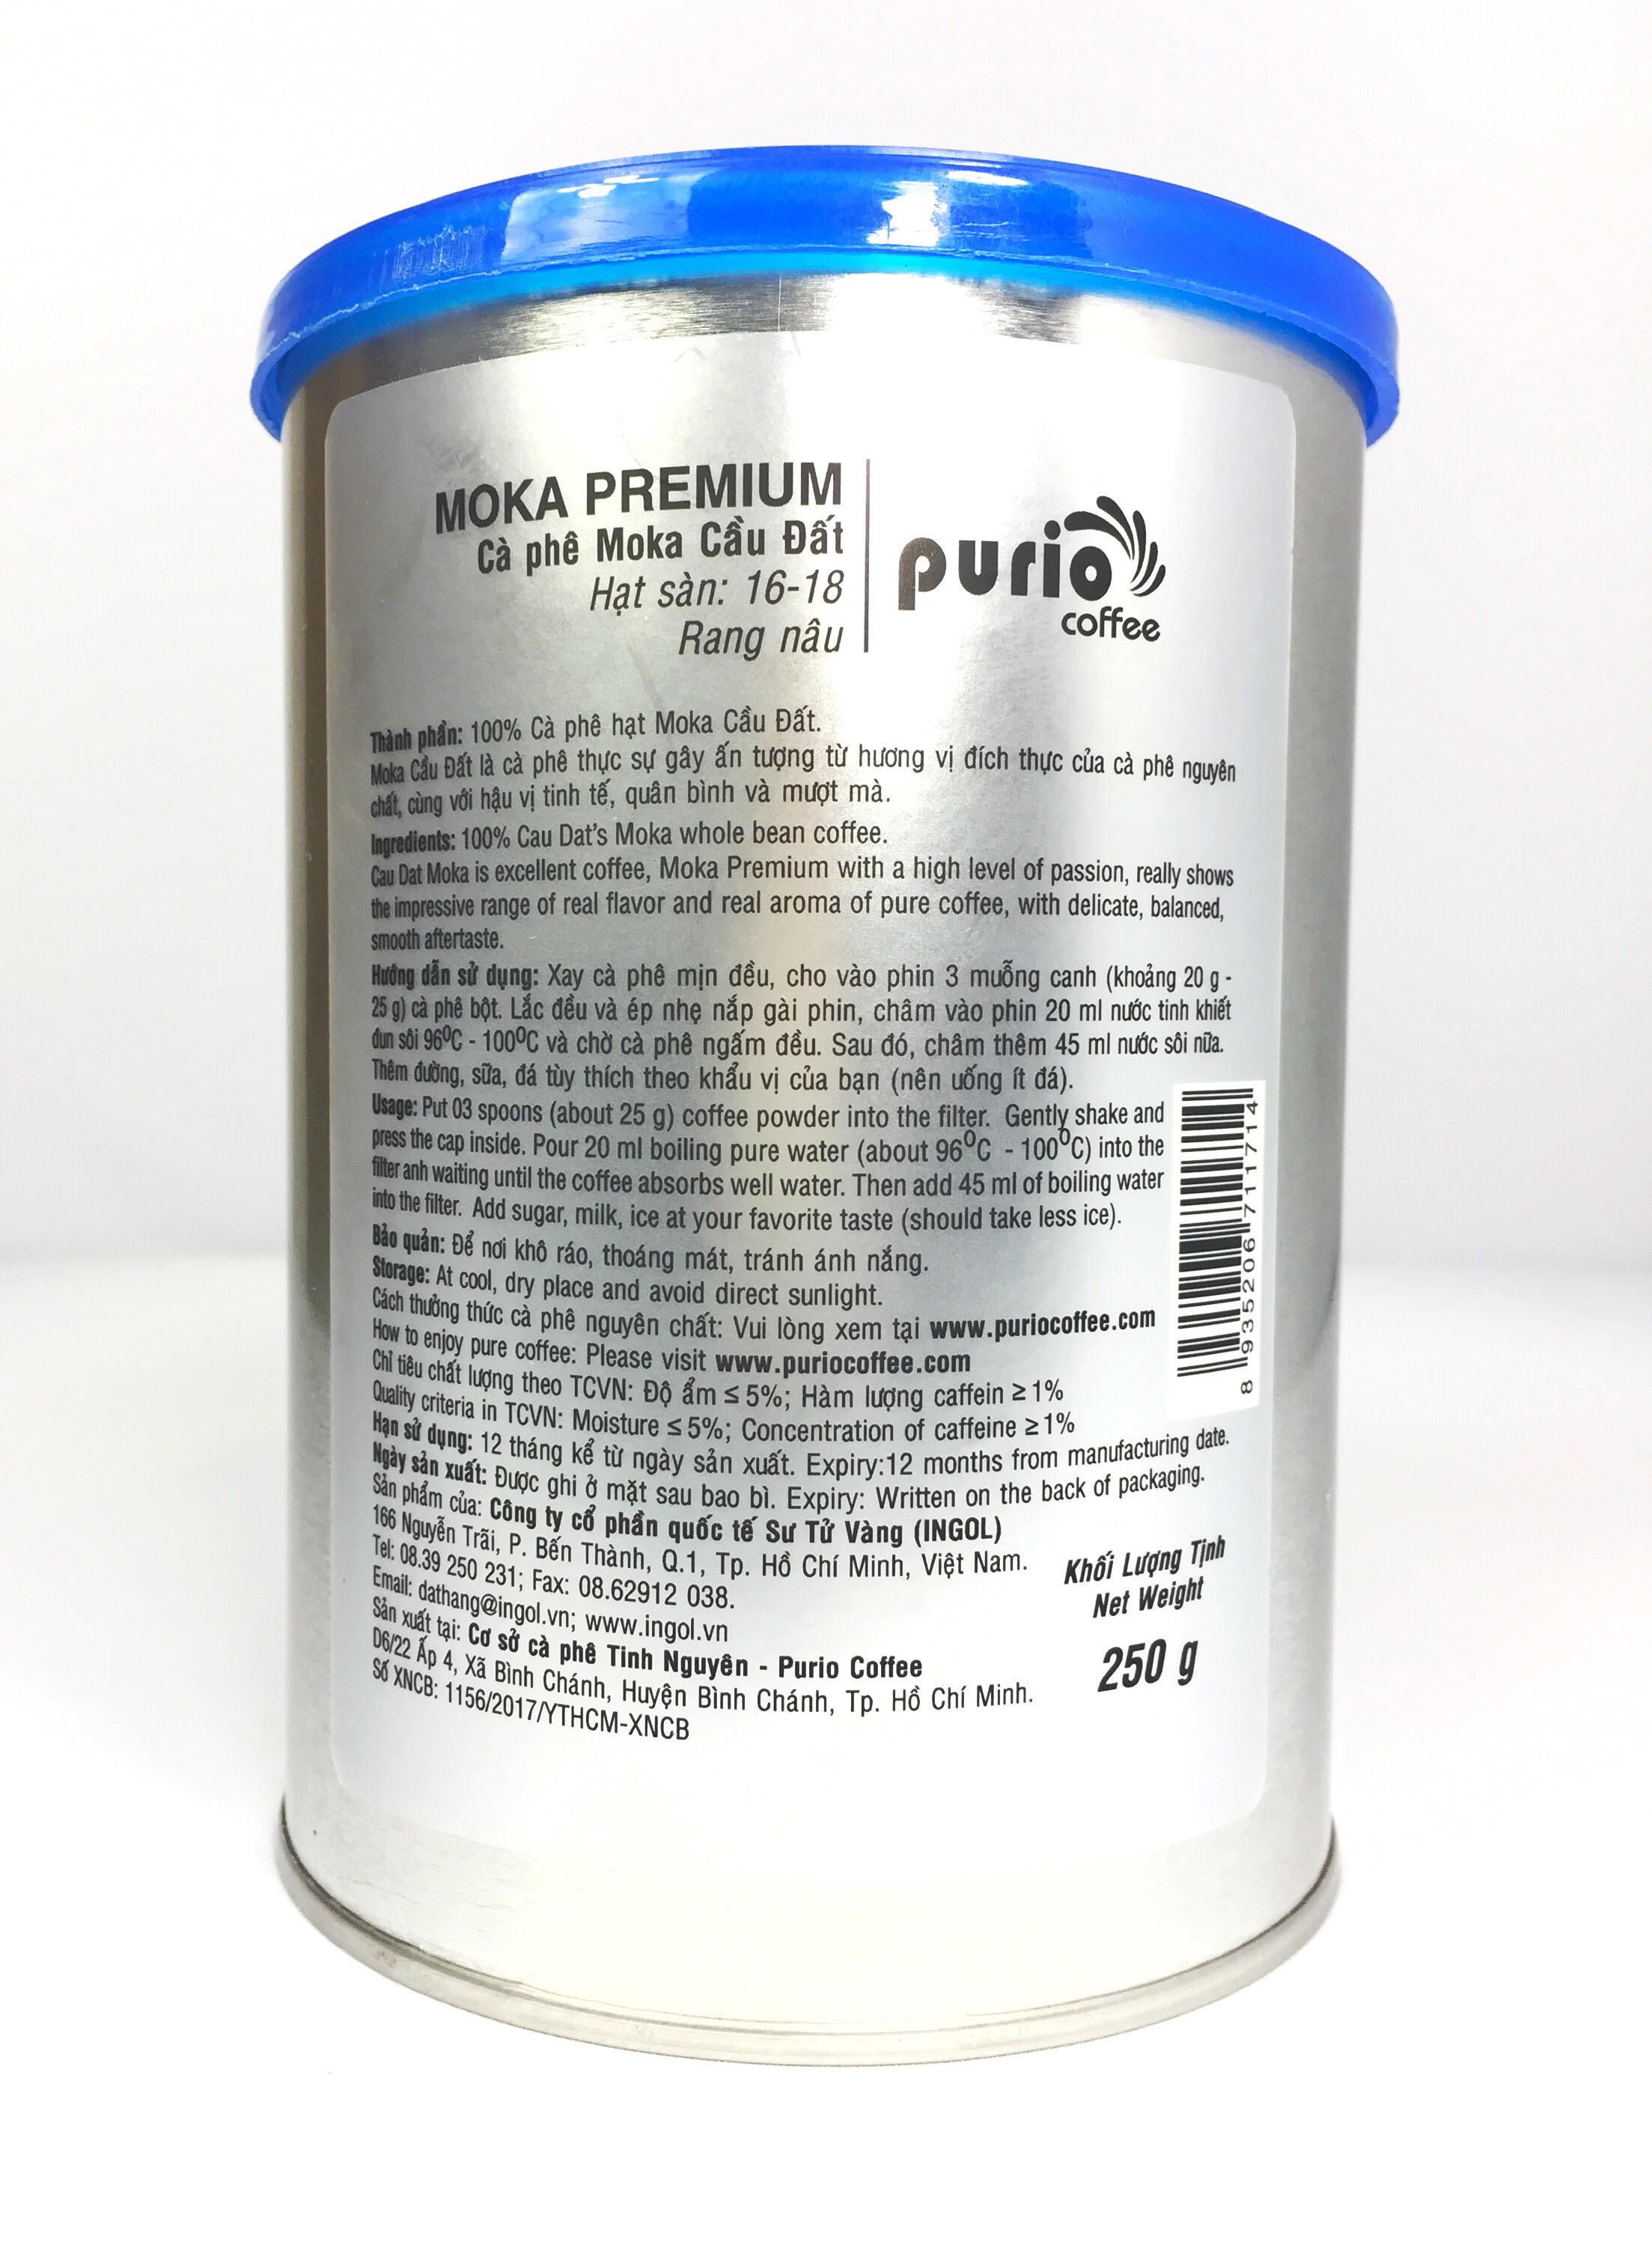 PURIO Coffee - cà phê hạt rang mộc, Moka Premium, 100% hạt Moka, Đắng dịu - Đạt tiêu chuẩn HACCP - Lon 250gr